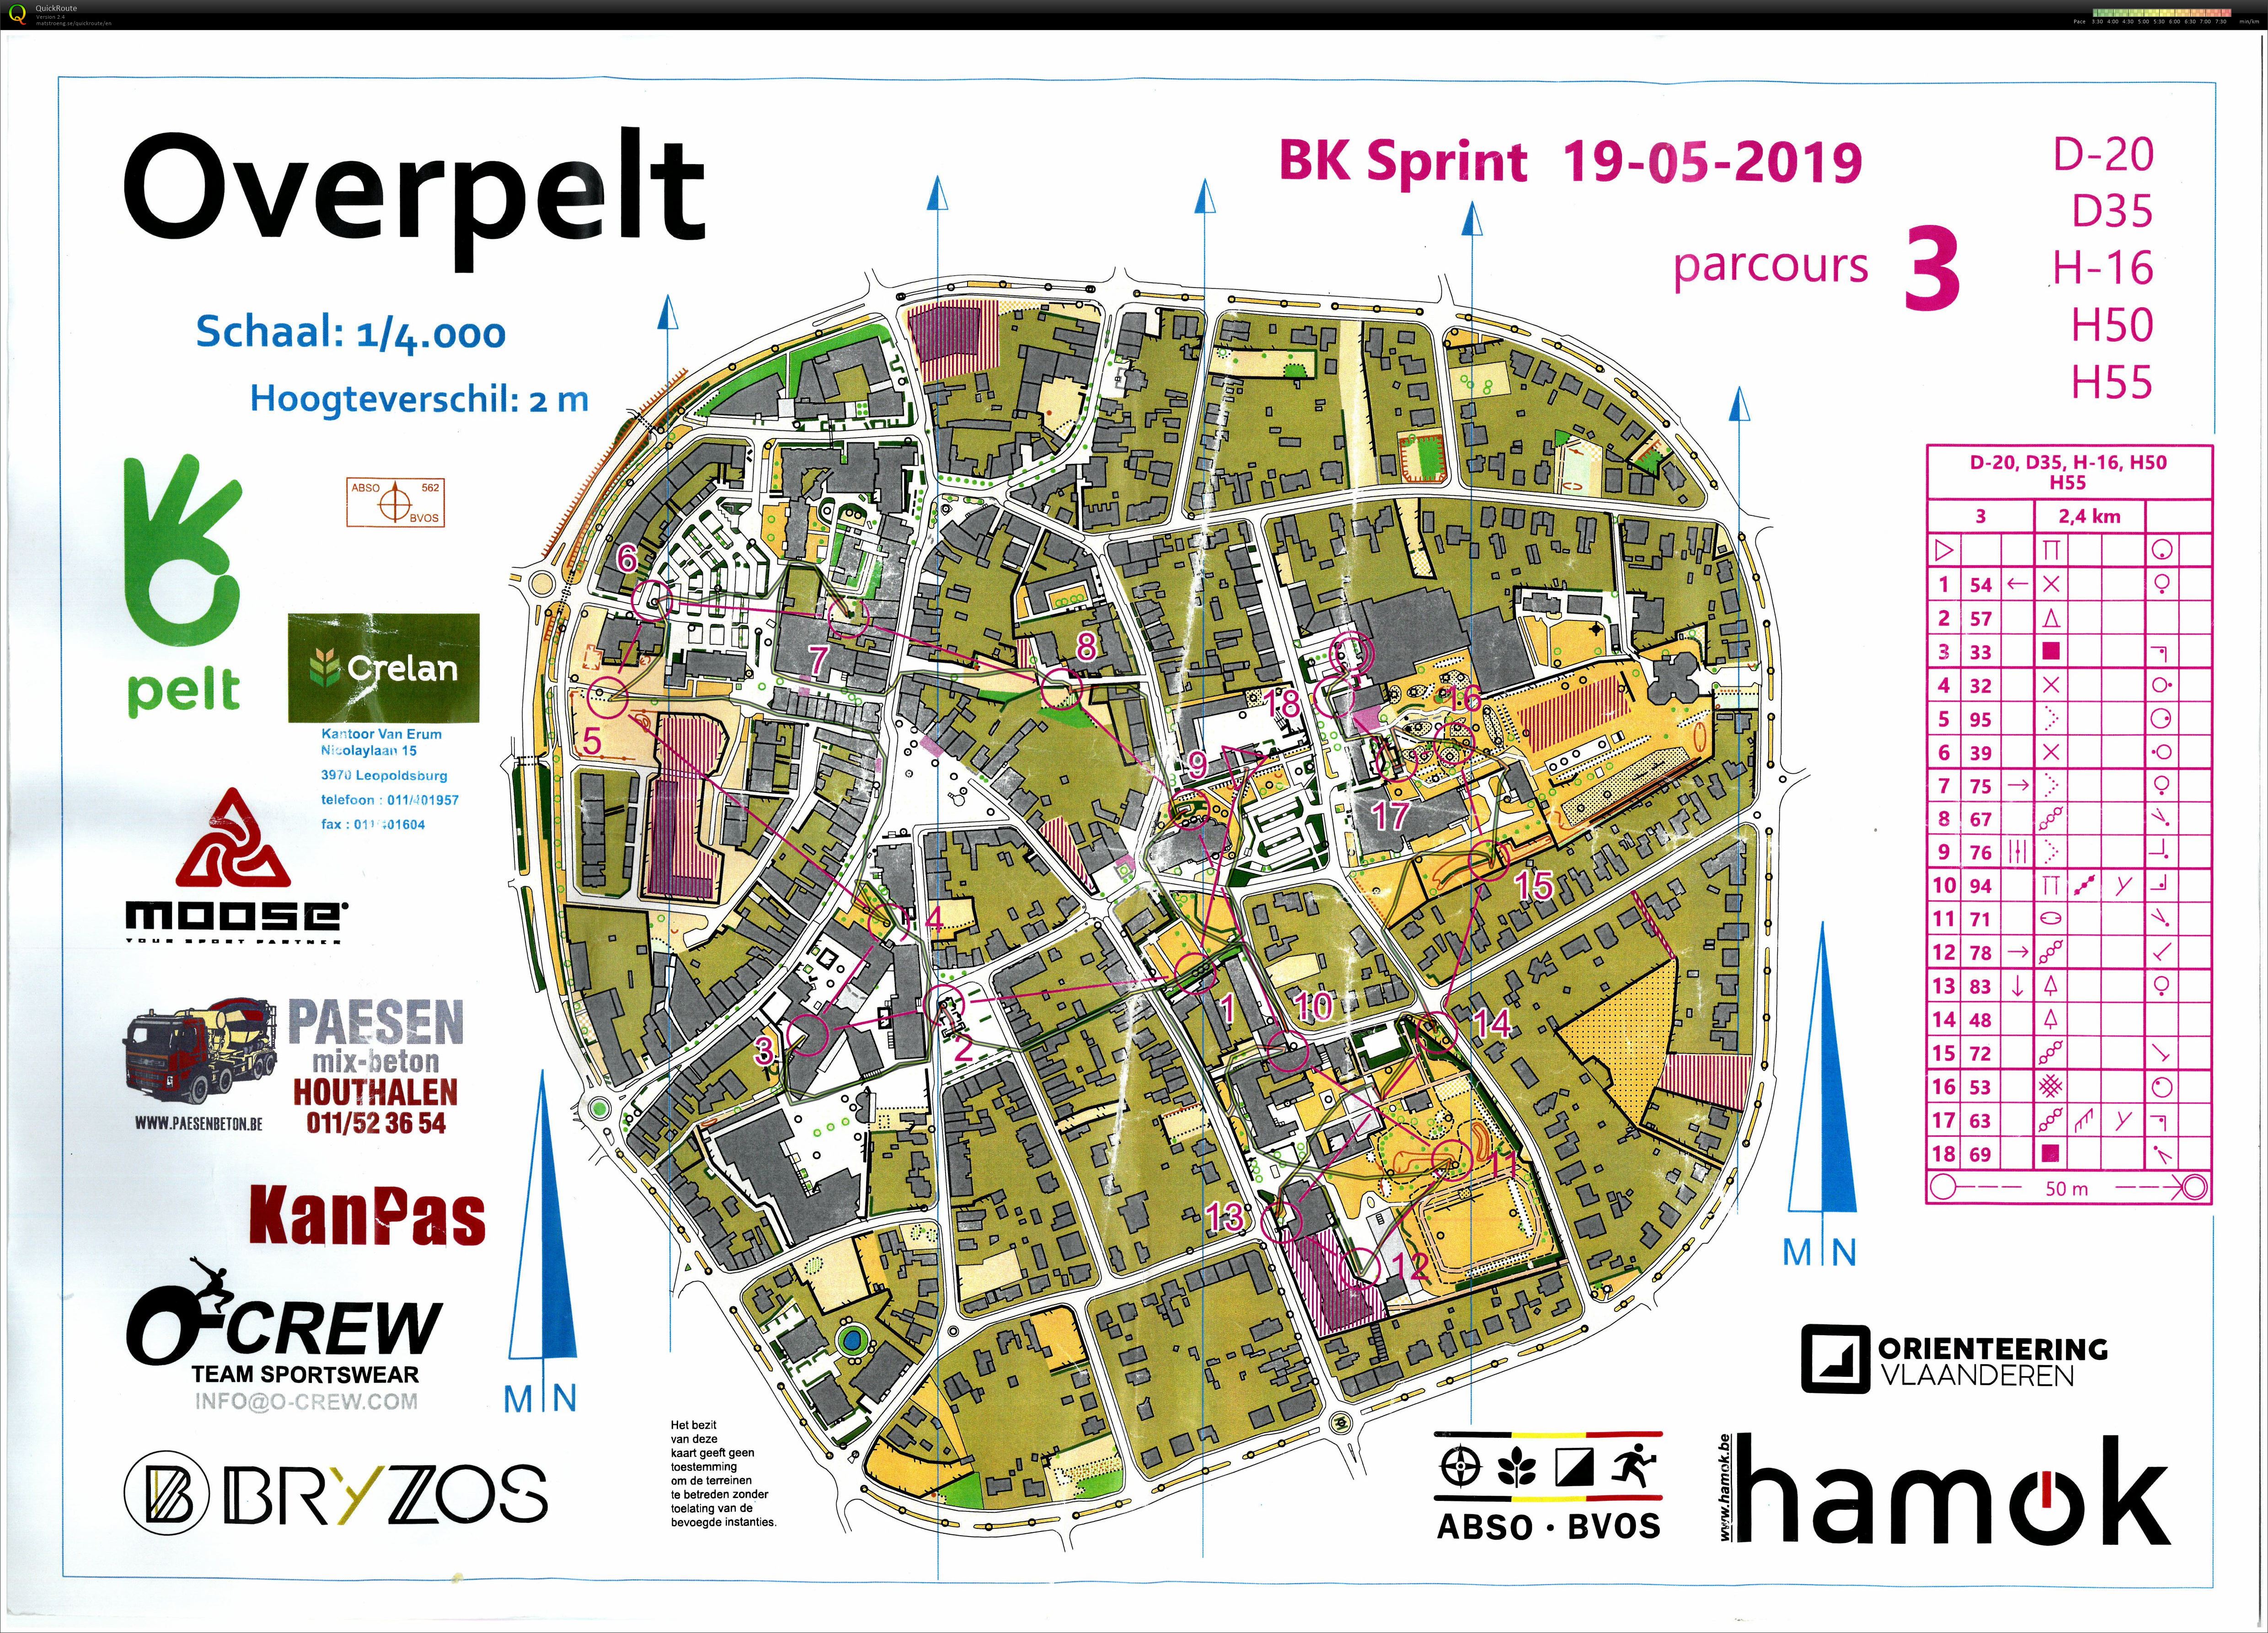 Championnat de Belgique de Sprint (19.05.2019)